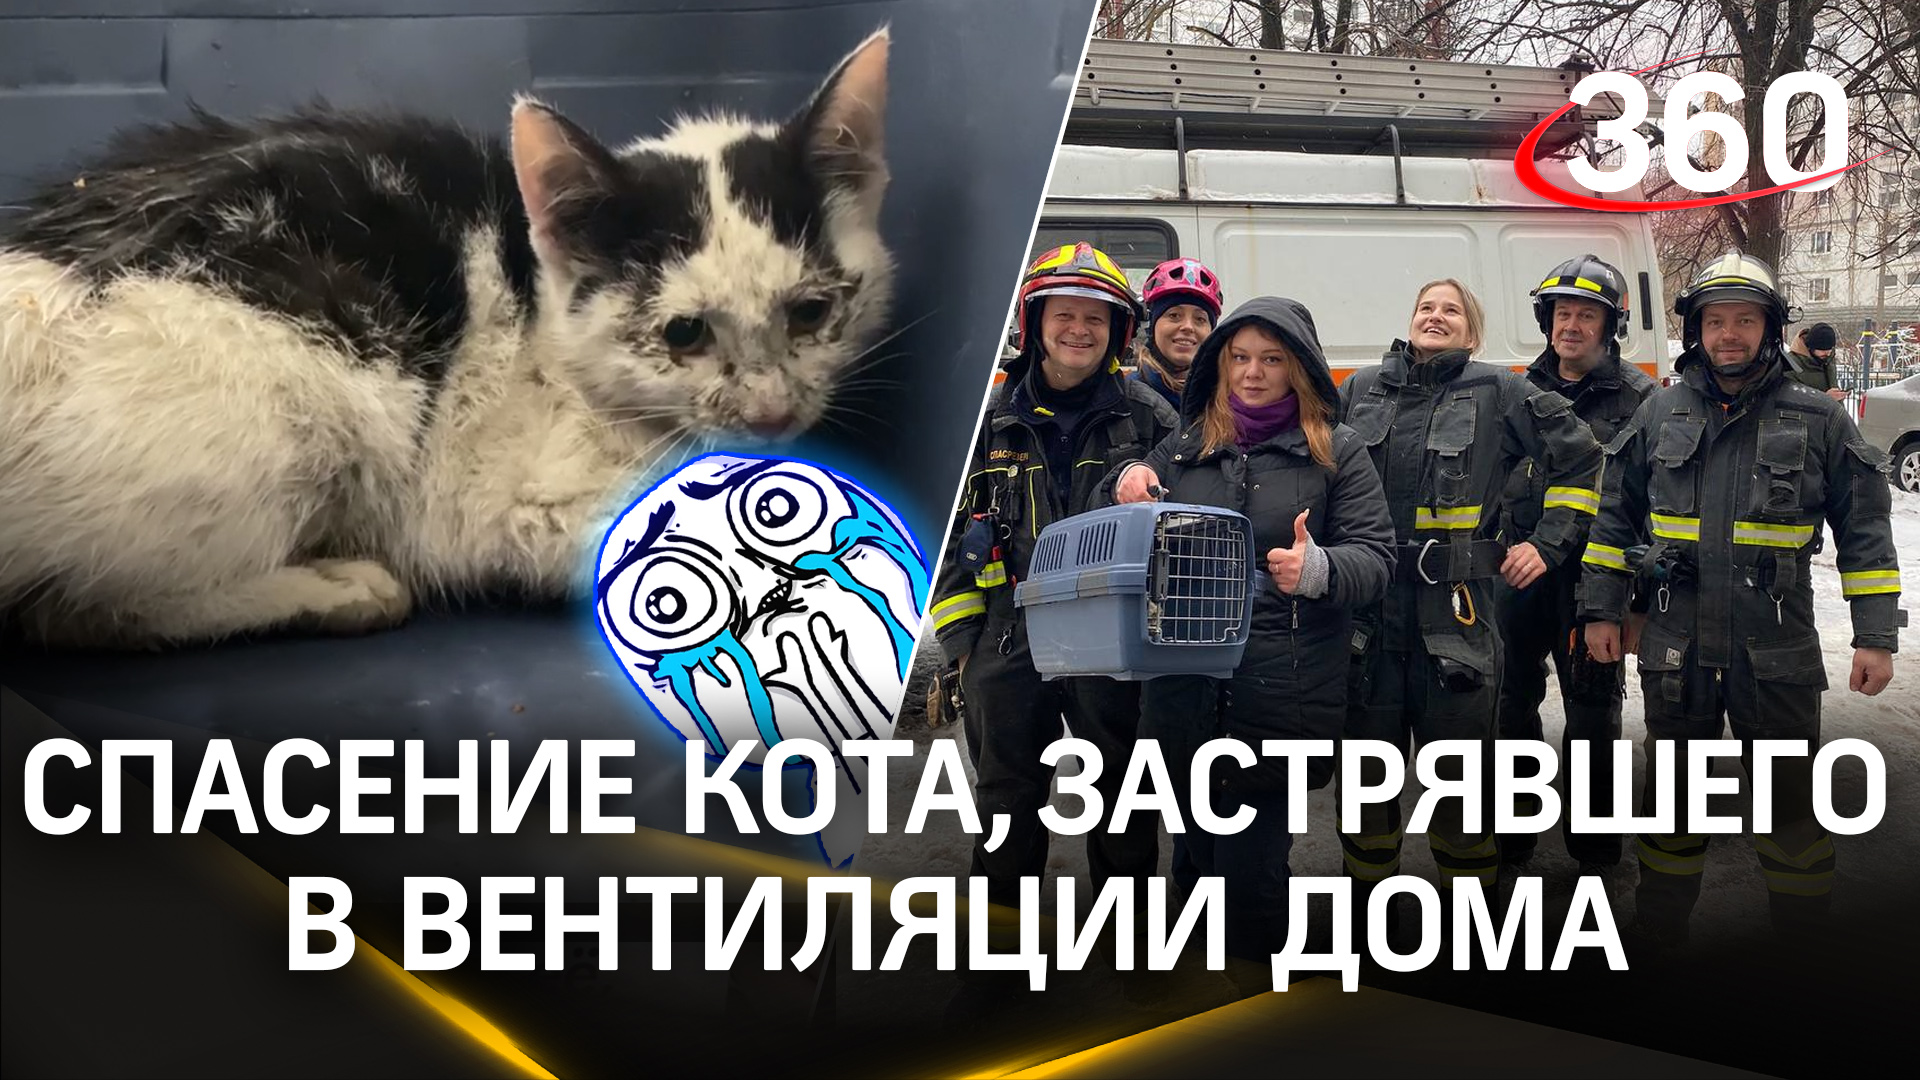 Пять дней без воды и еды: в Москве спасли кота, который застрял в вентиляции дома